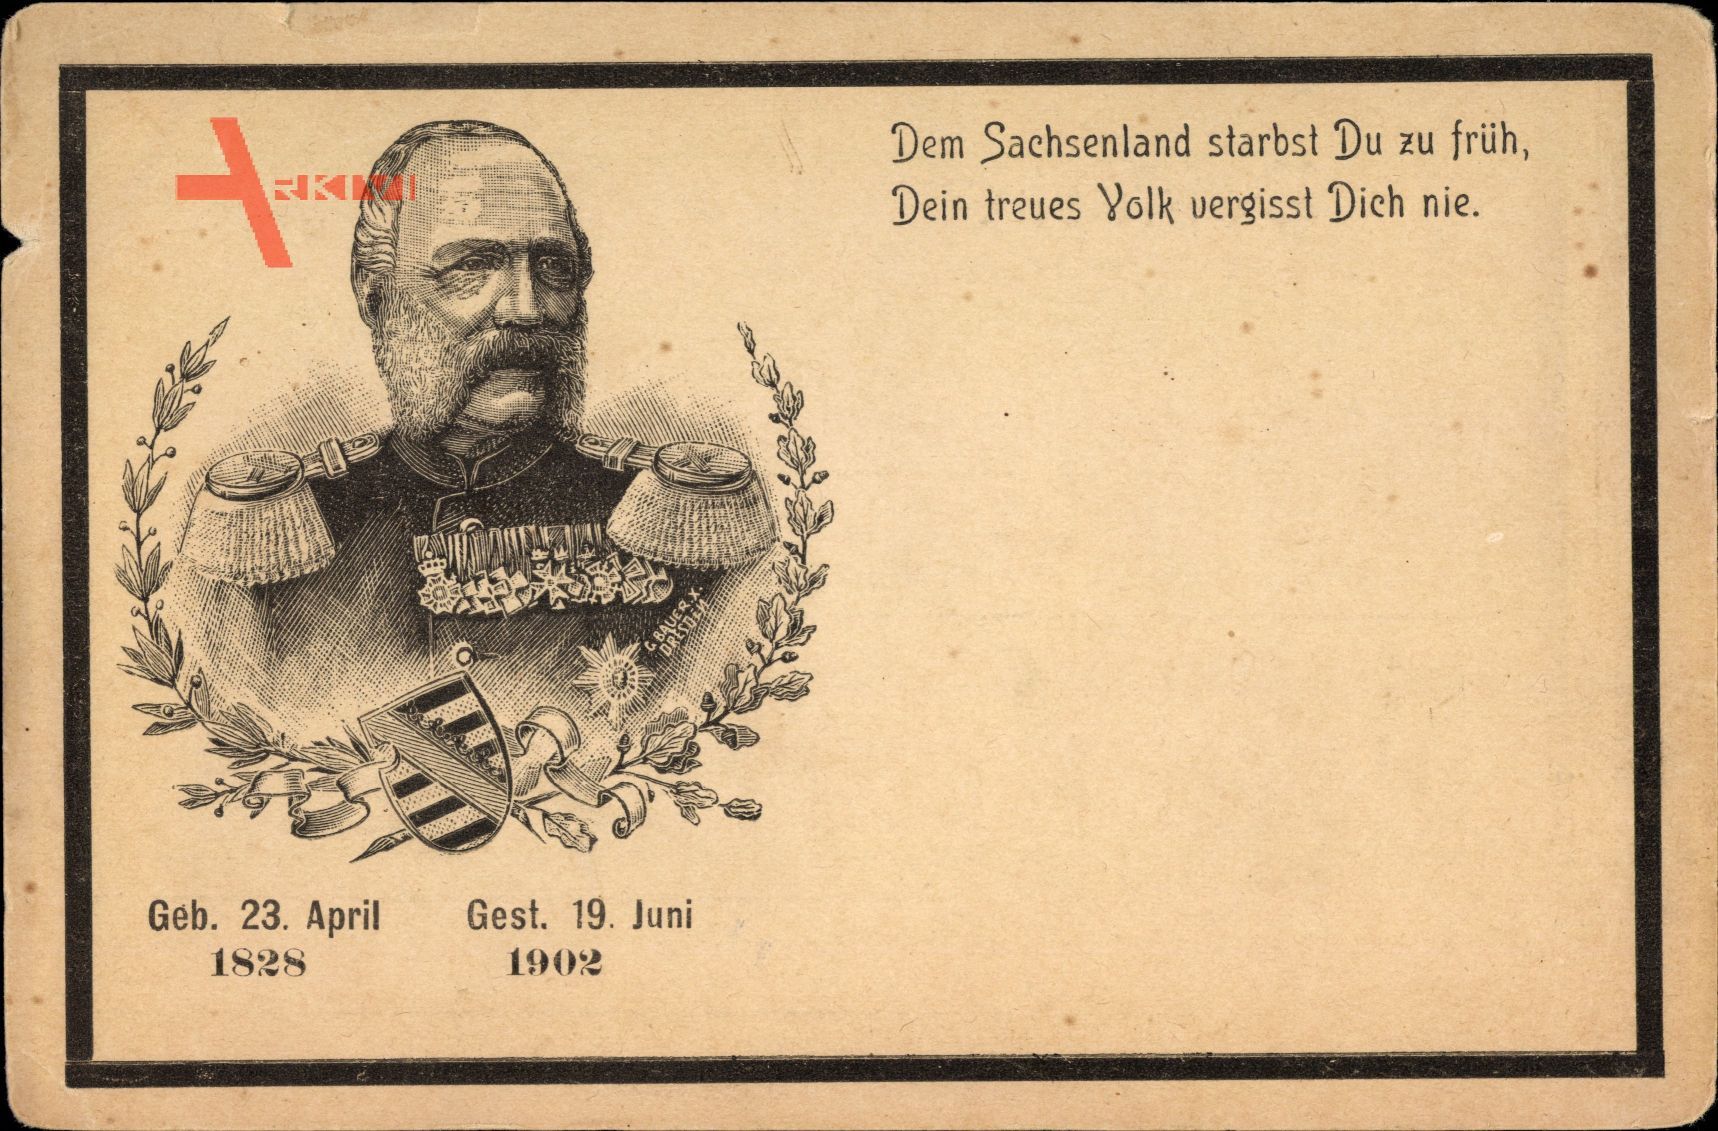 Passepartout König Albert von Sachsen, 1928 bis 1902, Trauerkarte